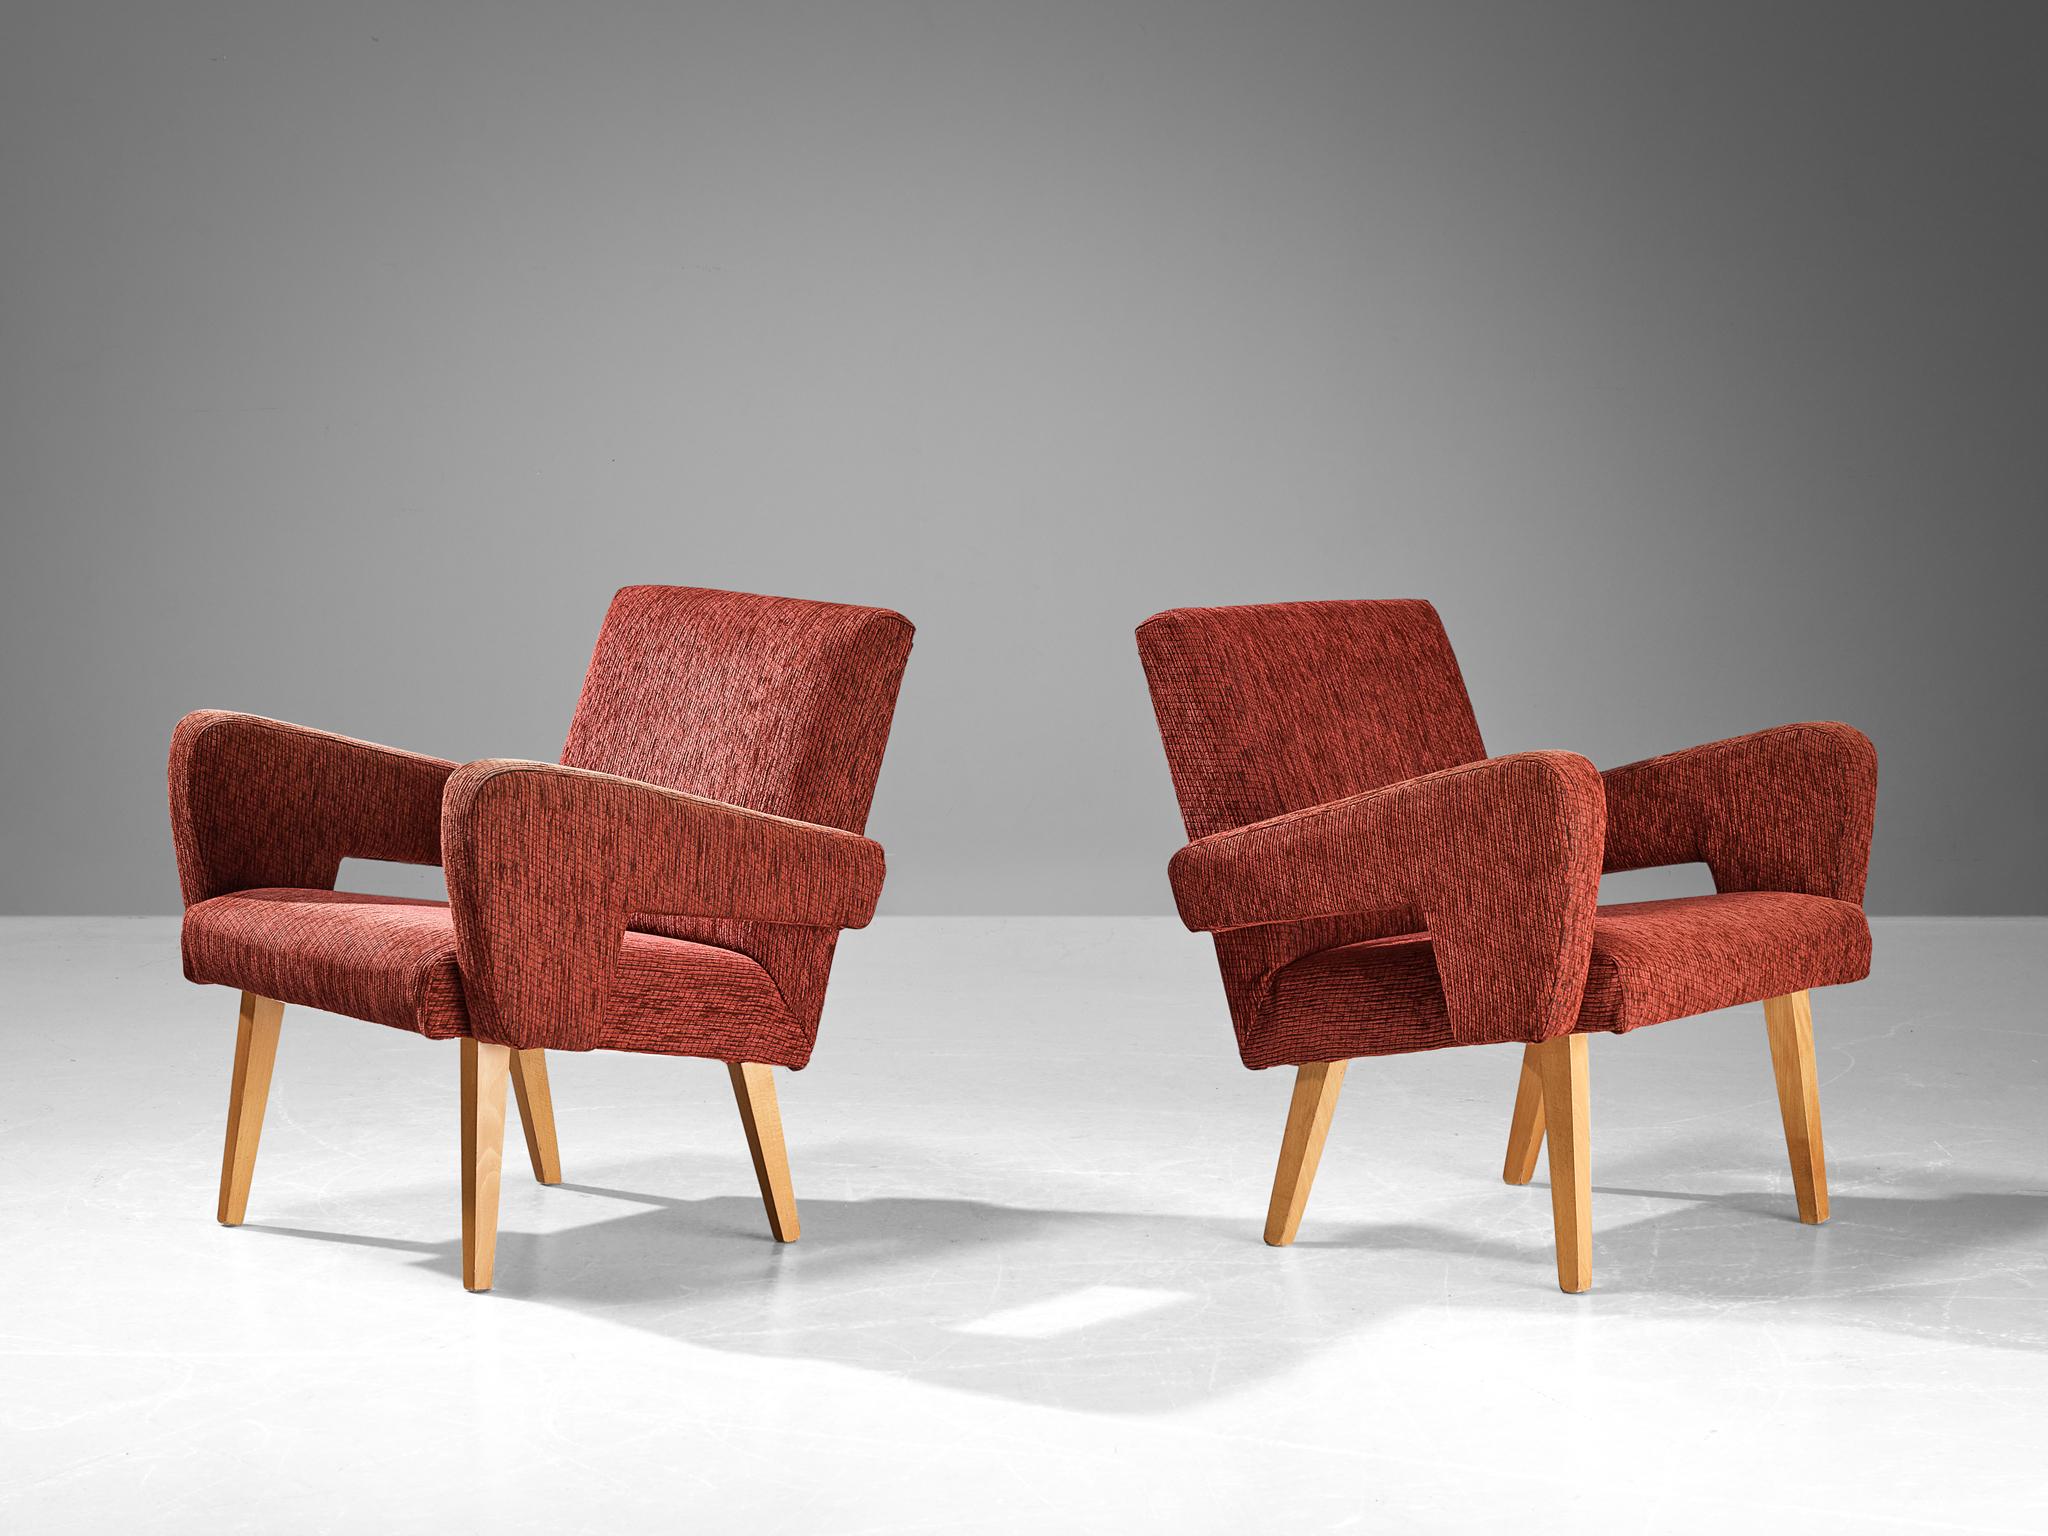 Paire de chaises longues, velours, hêtre teinté, République tchèque, années 1960

Ces fauteuils bien proportionnés ont une apparence claire avec des formes angulaires et des lignes frappantes qui dominent la disposition. On remarque les accoudoirs